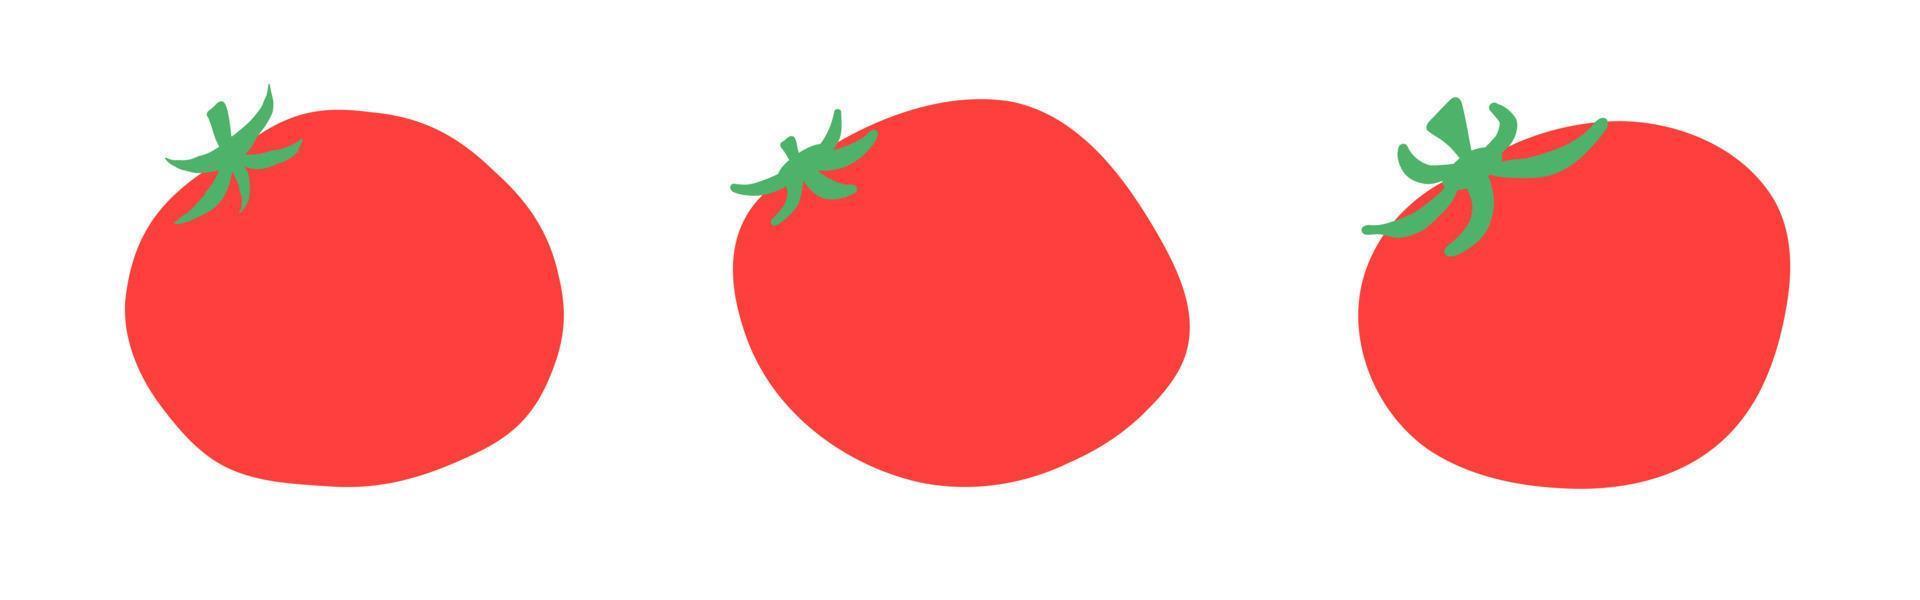 satz tomaten im flachen karikaturstil. gesundes natürliches gemüse essen. Vektor-Illustration isoliert auf weißem Hintergrund. vektor